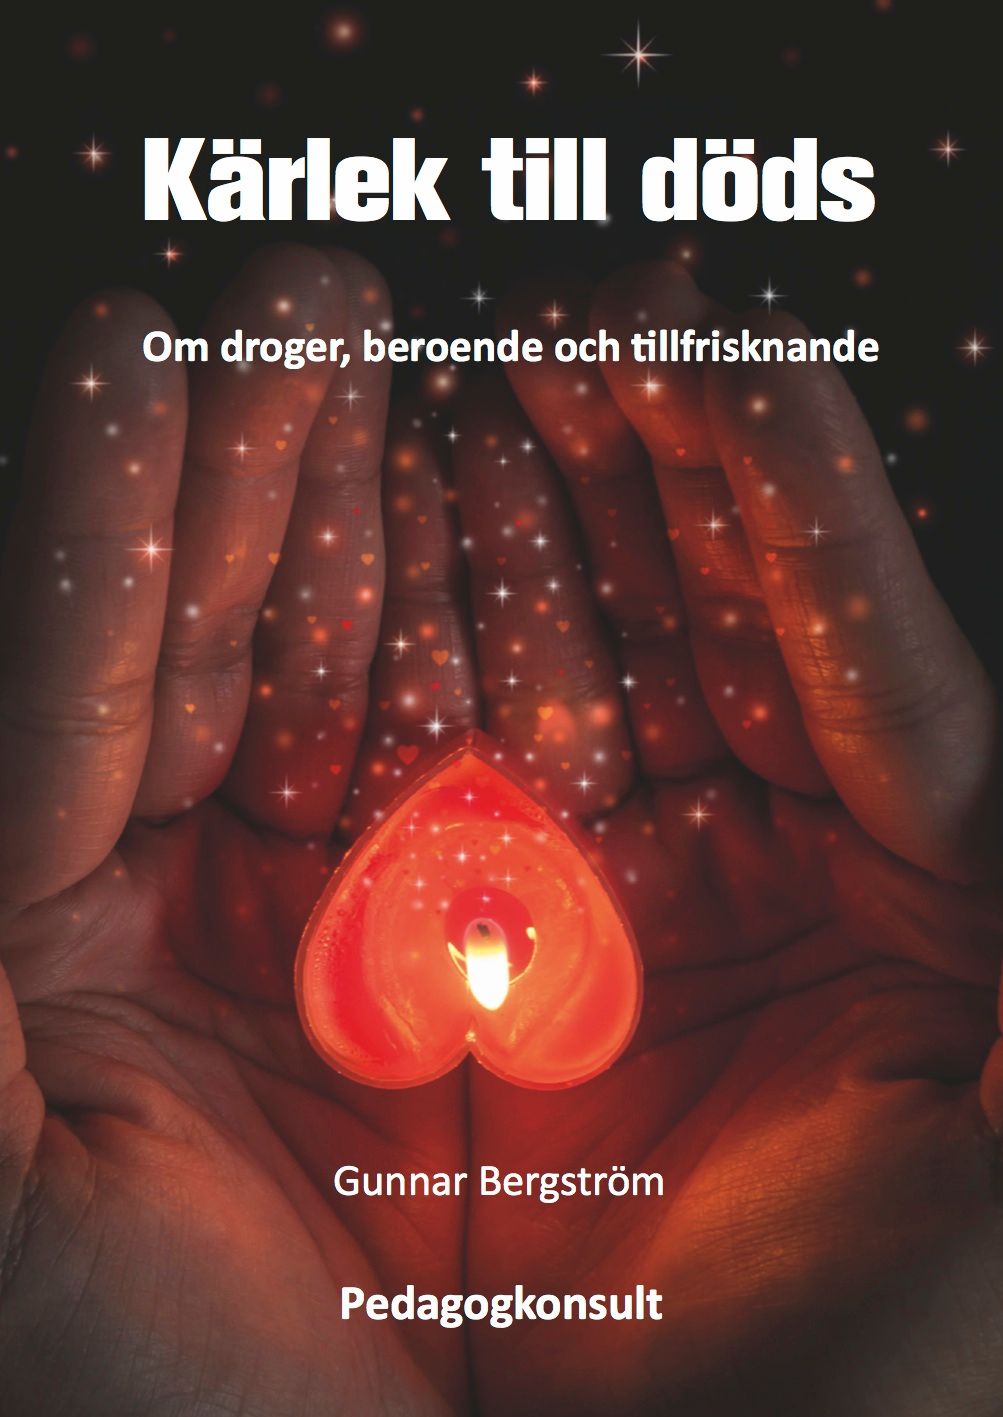 Kärlek till döds, e-bok av Gunnar Bergström